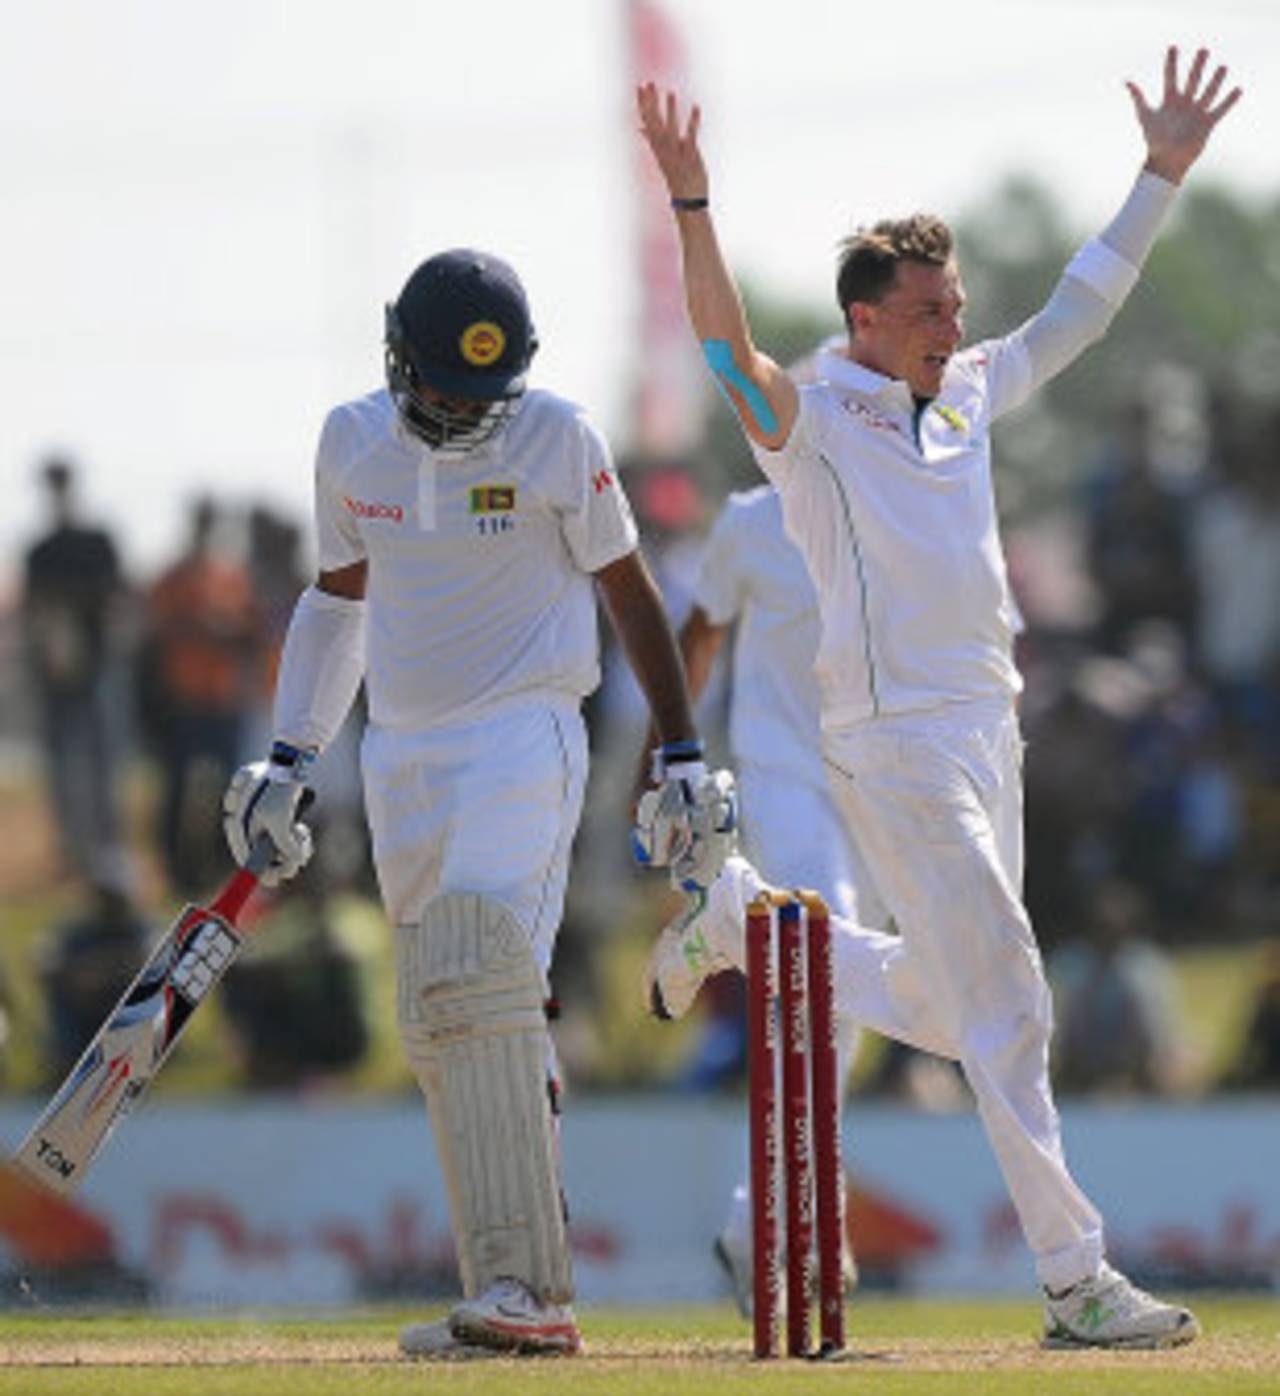 Dale Steyn celebrates after getting rid of Lahiru Thirimanne&nbsp;&nbsp;&bull;&nbsp;&nbsp;AFP